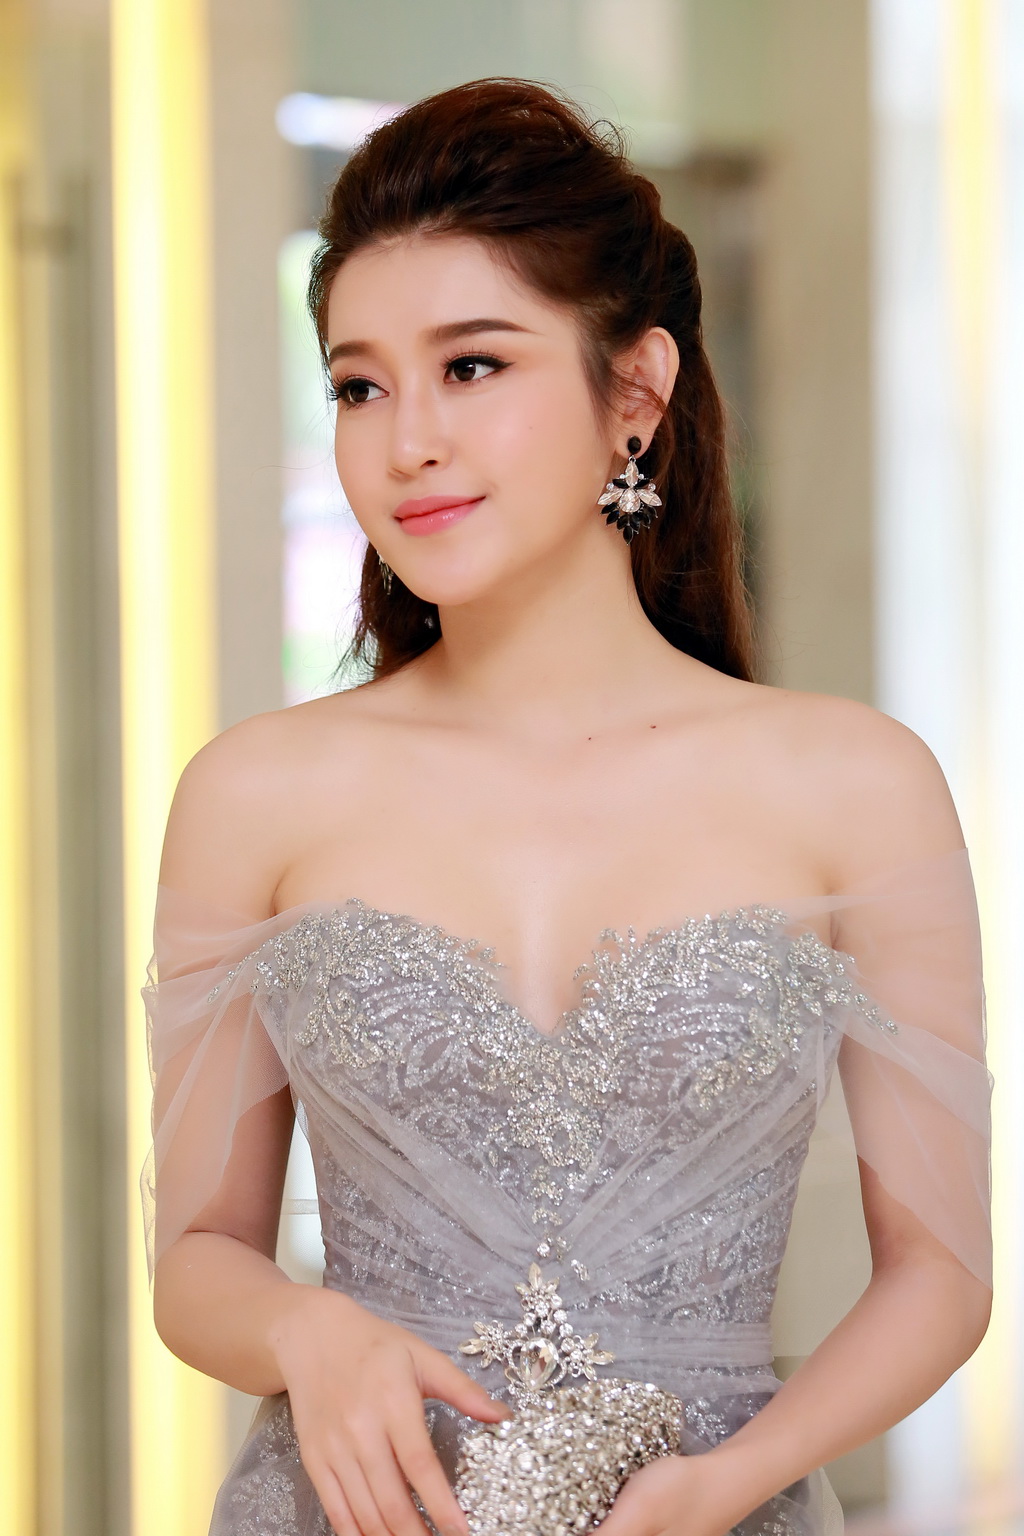 Sau khi tham gia bộ phim từ Myanmar trở về, Á hậu Huyền My sẽ tiếp tục đồng hành cùng các hoạt động của cuộc thi Hoa hậu Việt Nam 2016.